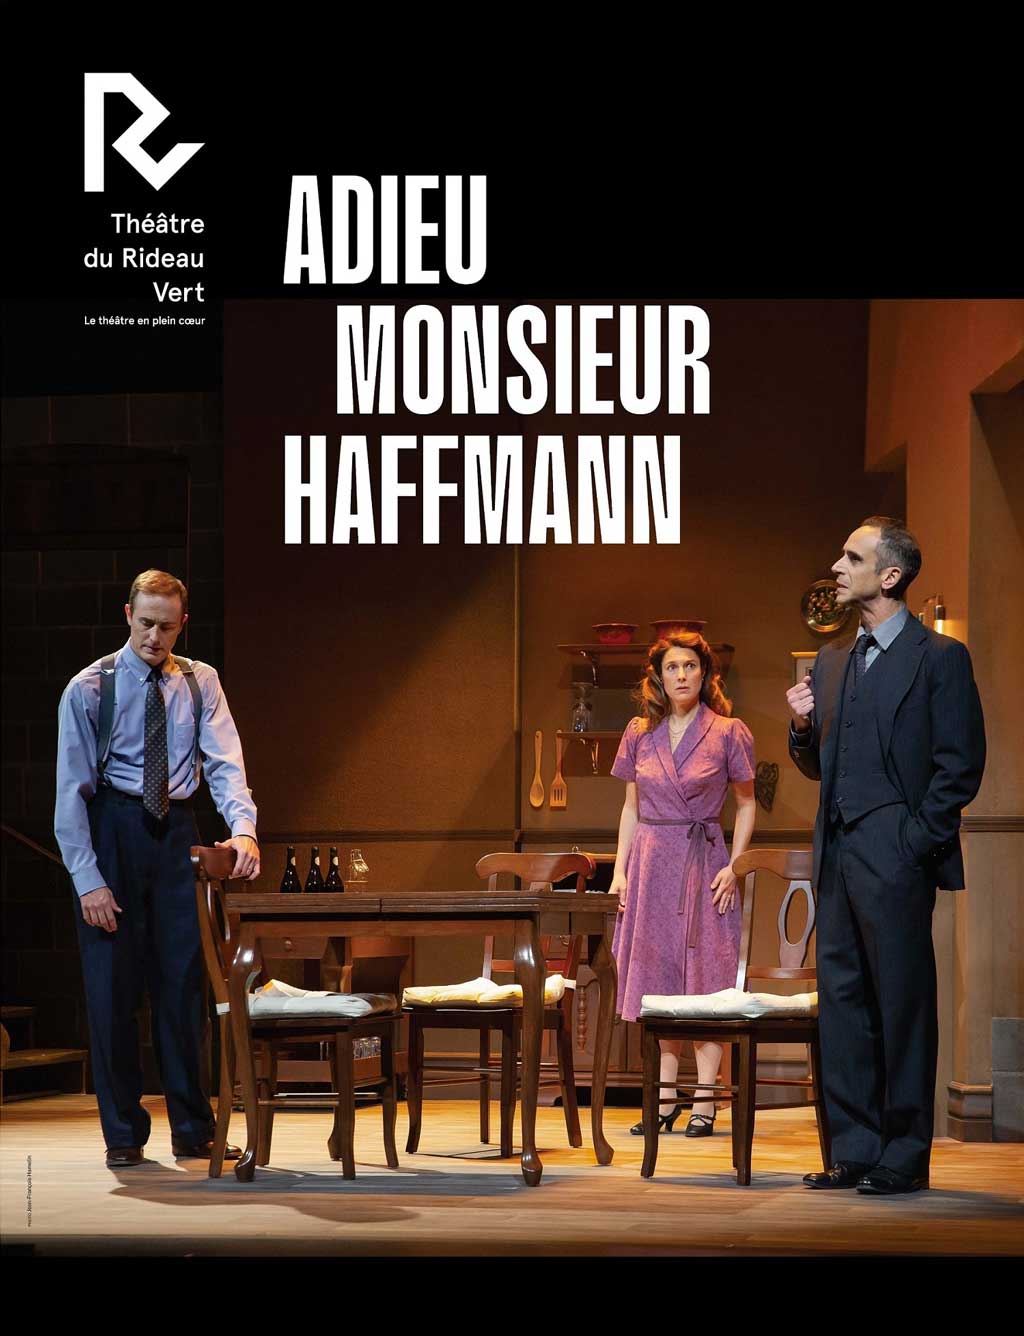 L'affiche de la pièce Adieu Monsieur Haffmann.